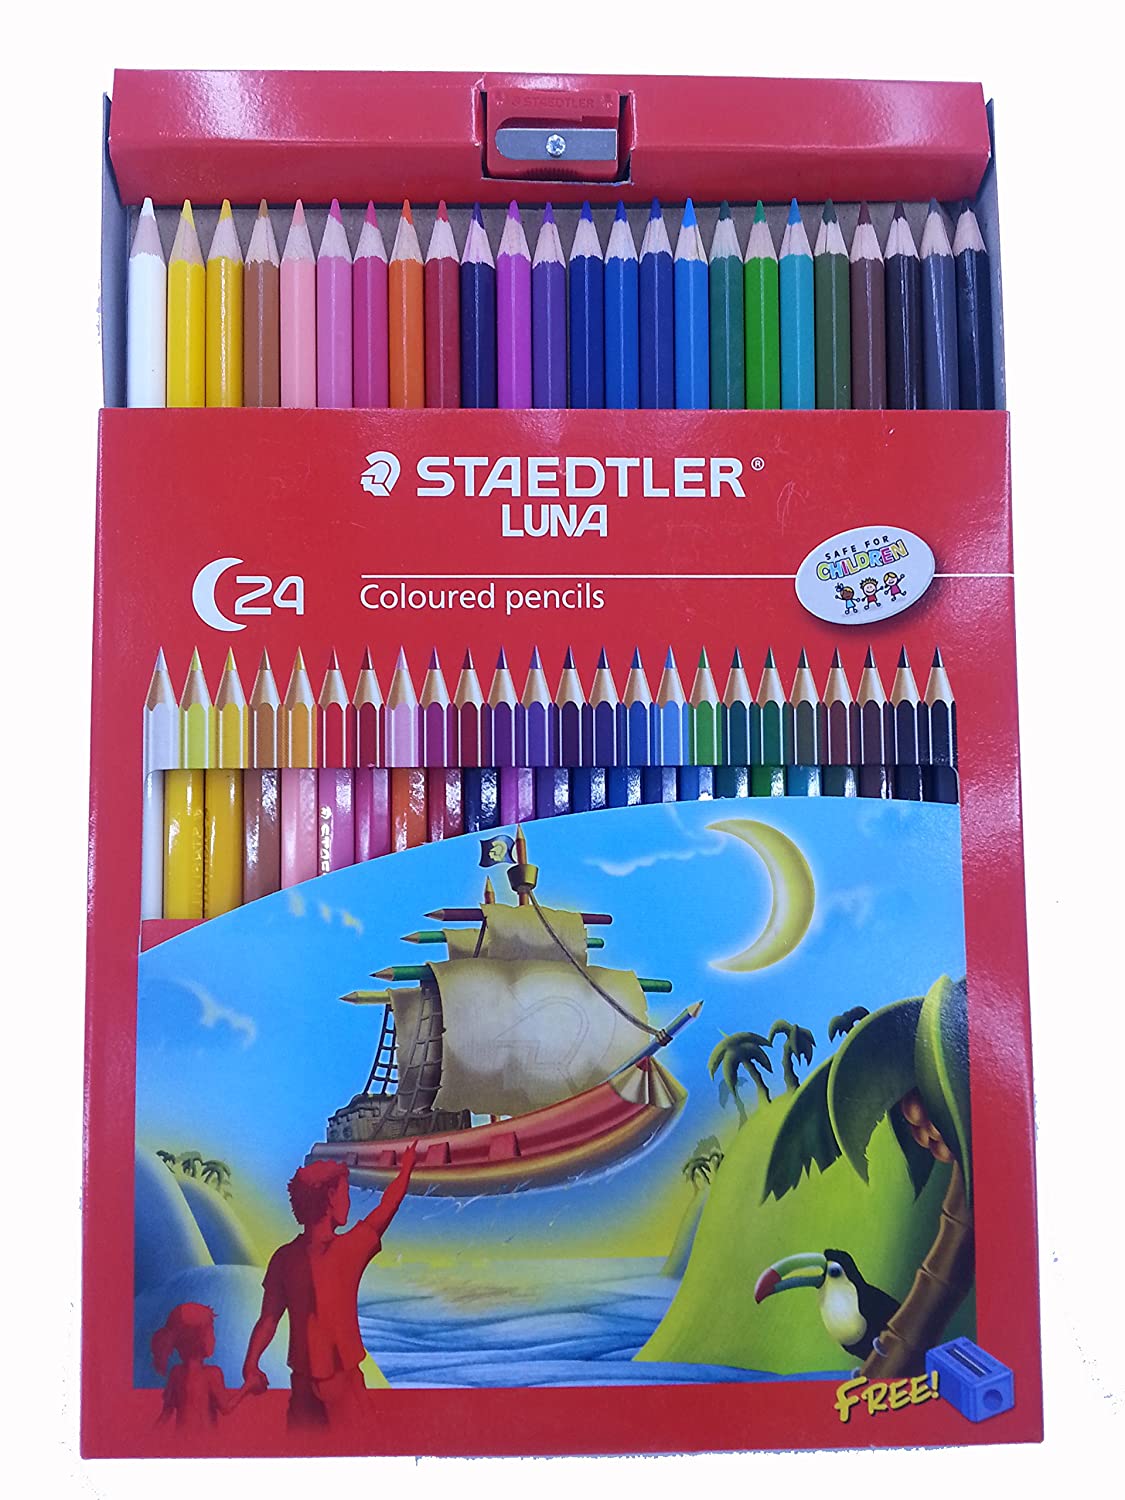 Staedtler Luna 24-Shade Coloured Pencil Set